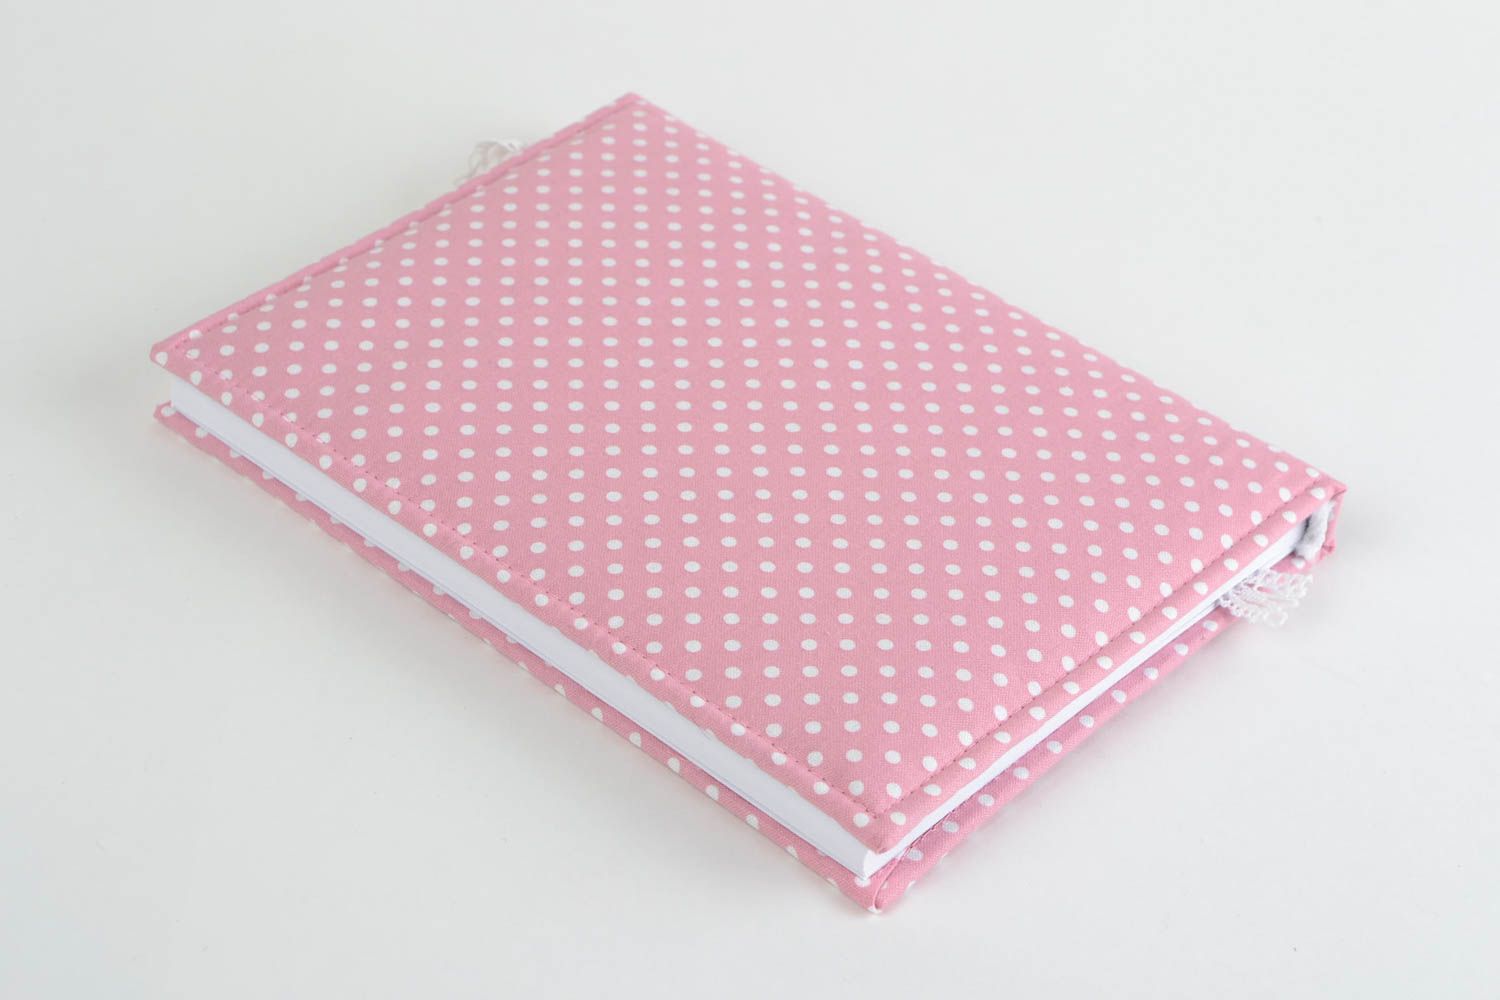 Скрап блокнот ручной работы в тканевой обложке для девушки розовый романтический фото 4